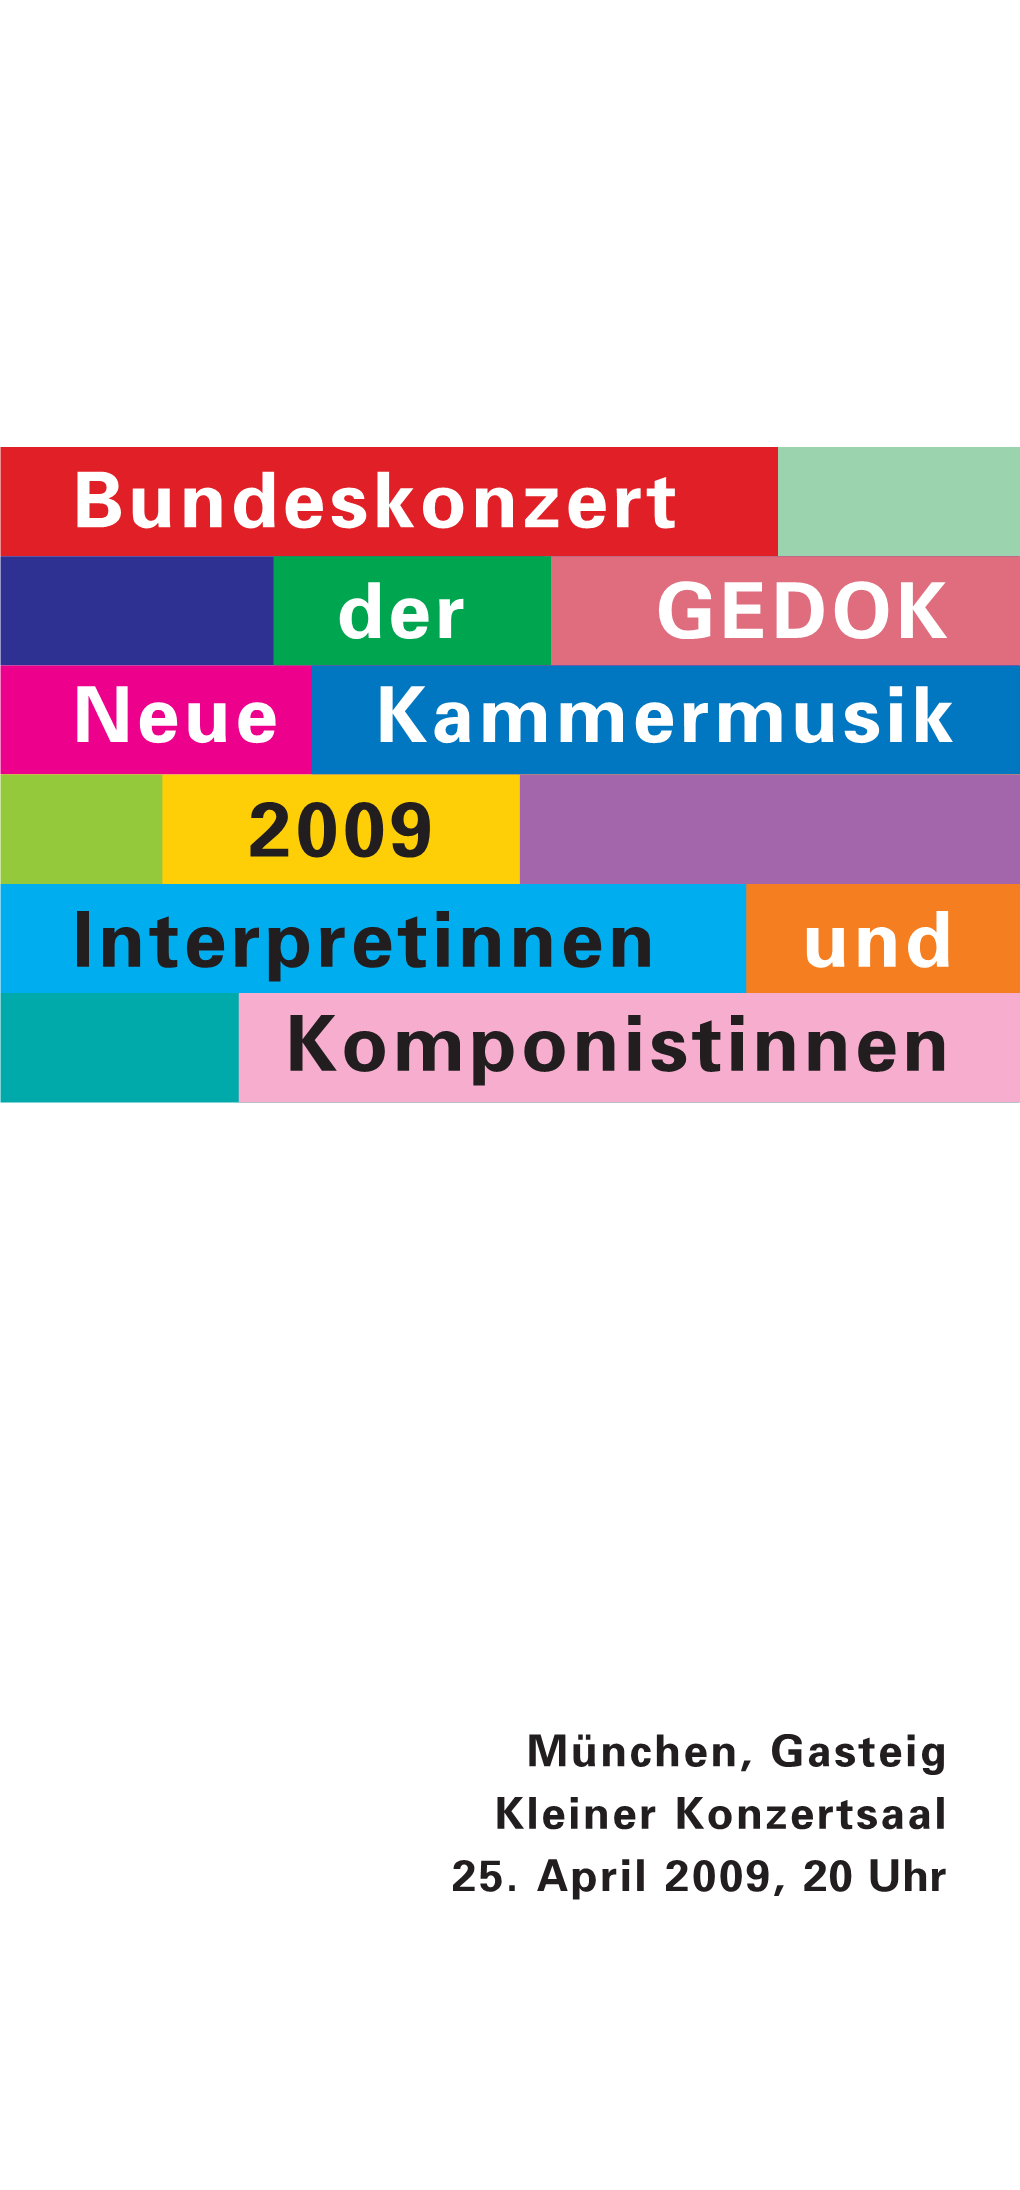 Bundeskonzert 2009 in München